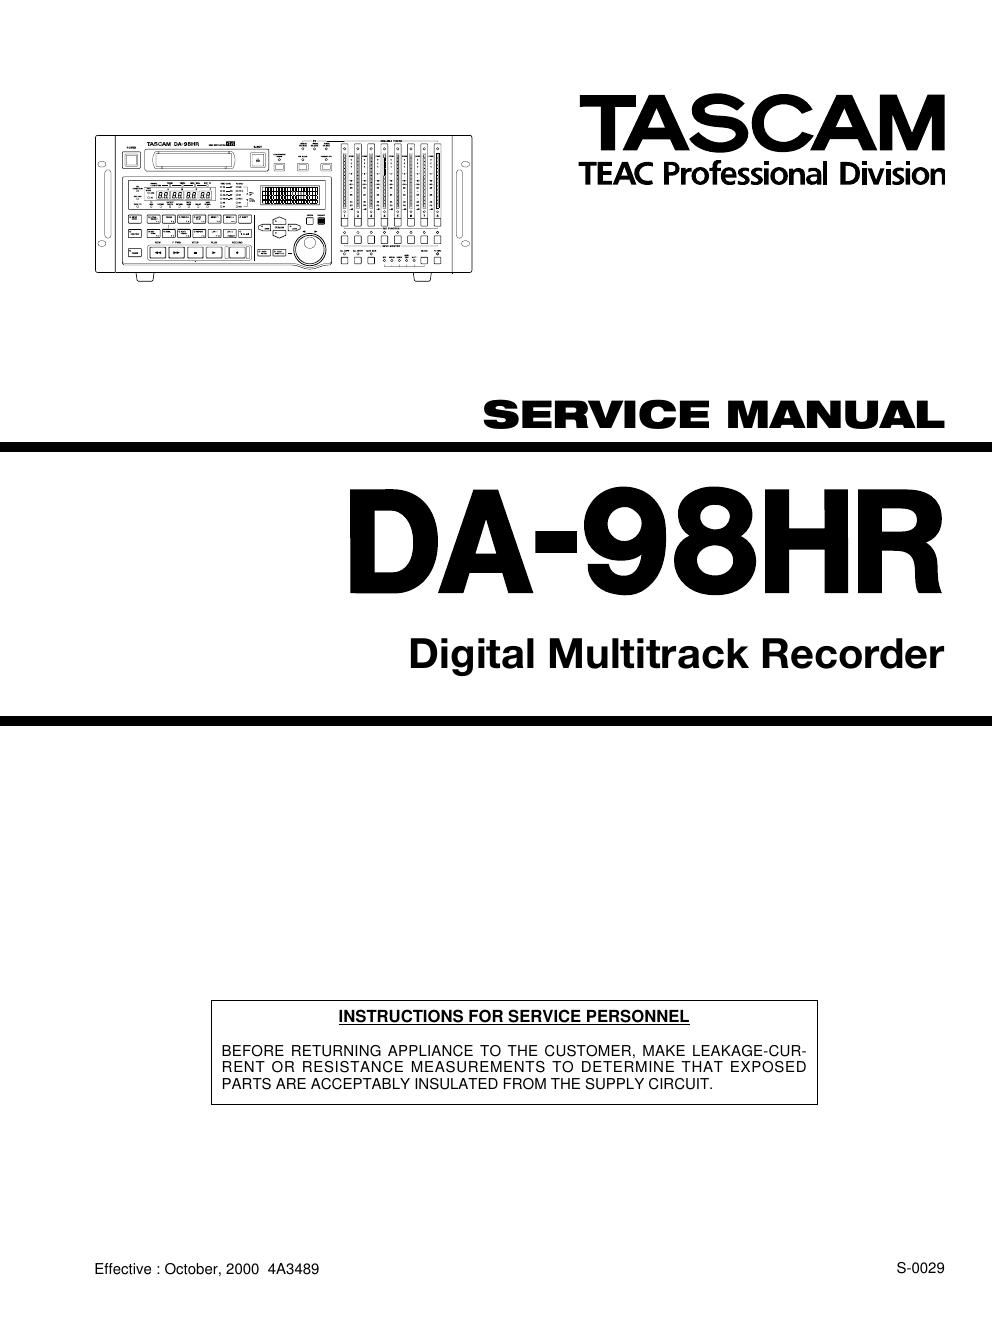 Tascam DA 98 HR Service Manual